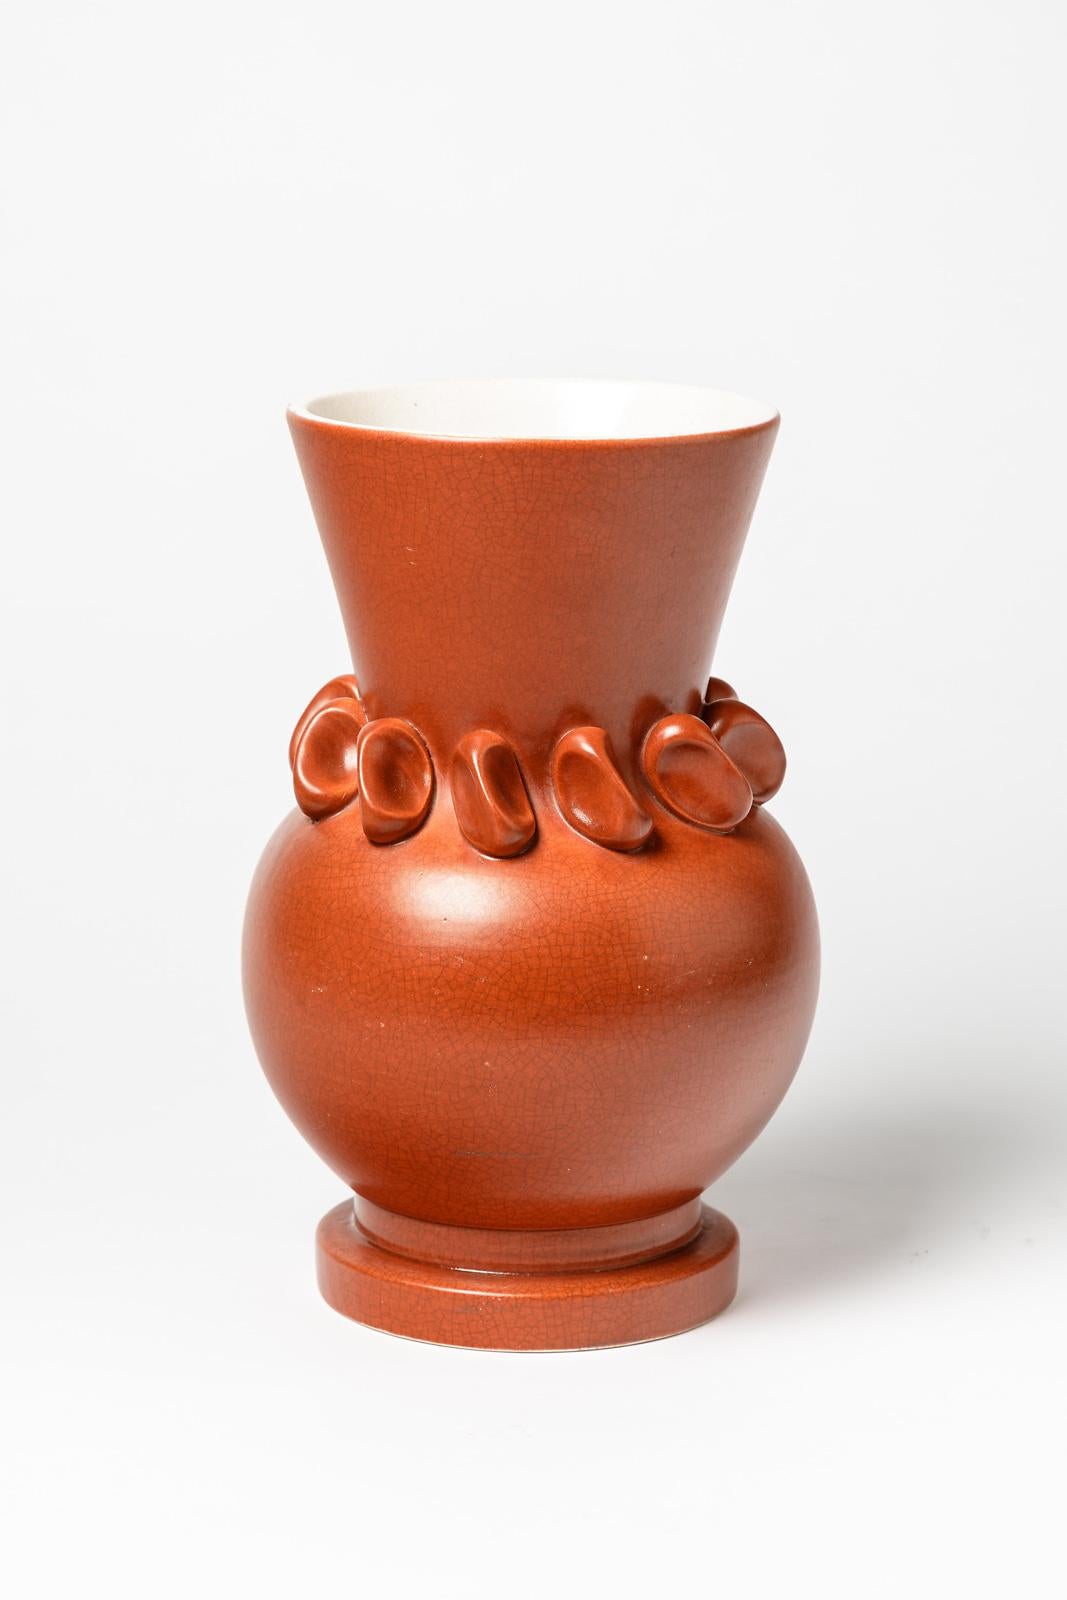 Pol Chambost

Fabriqué en France, vase original en céramique orange de l'artiste français du milieu du siècle dernier.

Réalisé vers 1950

Condition originale parfaite

Intérieur avec une glaçure céramique de couleur blanche

Signé sous la